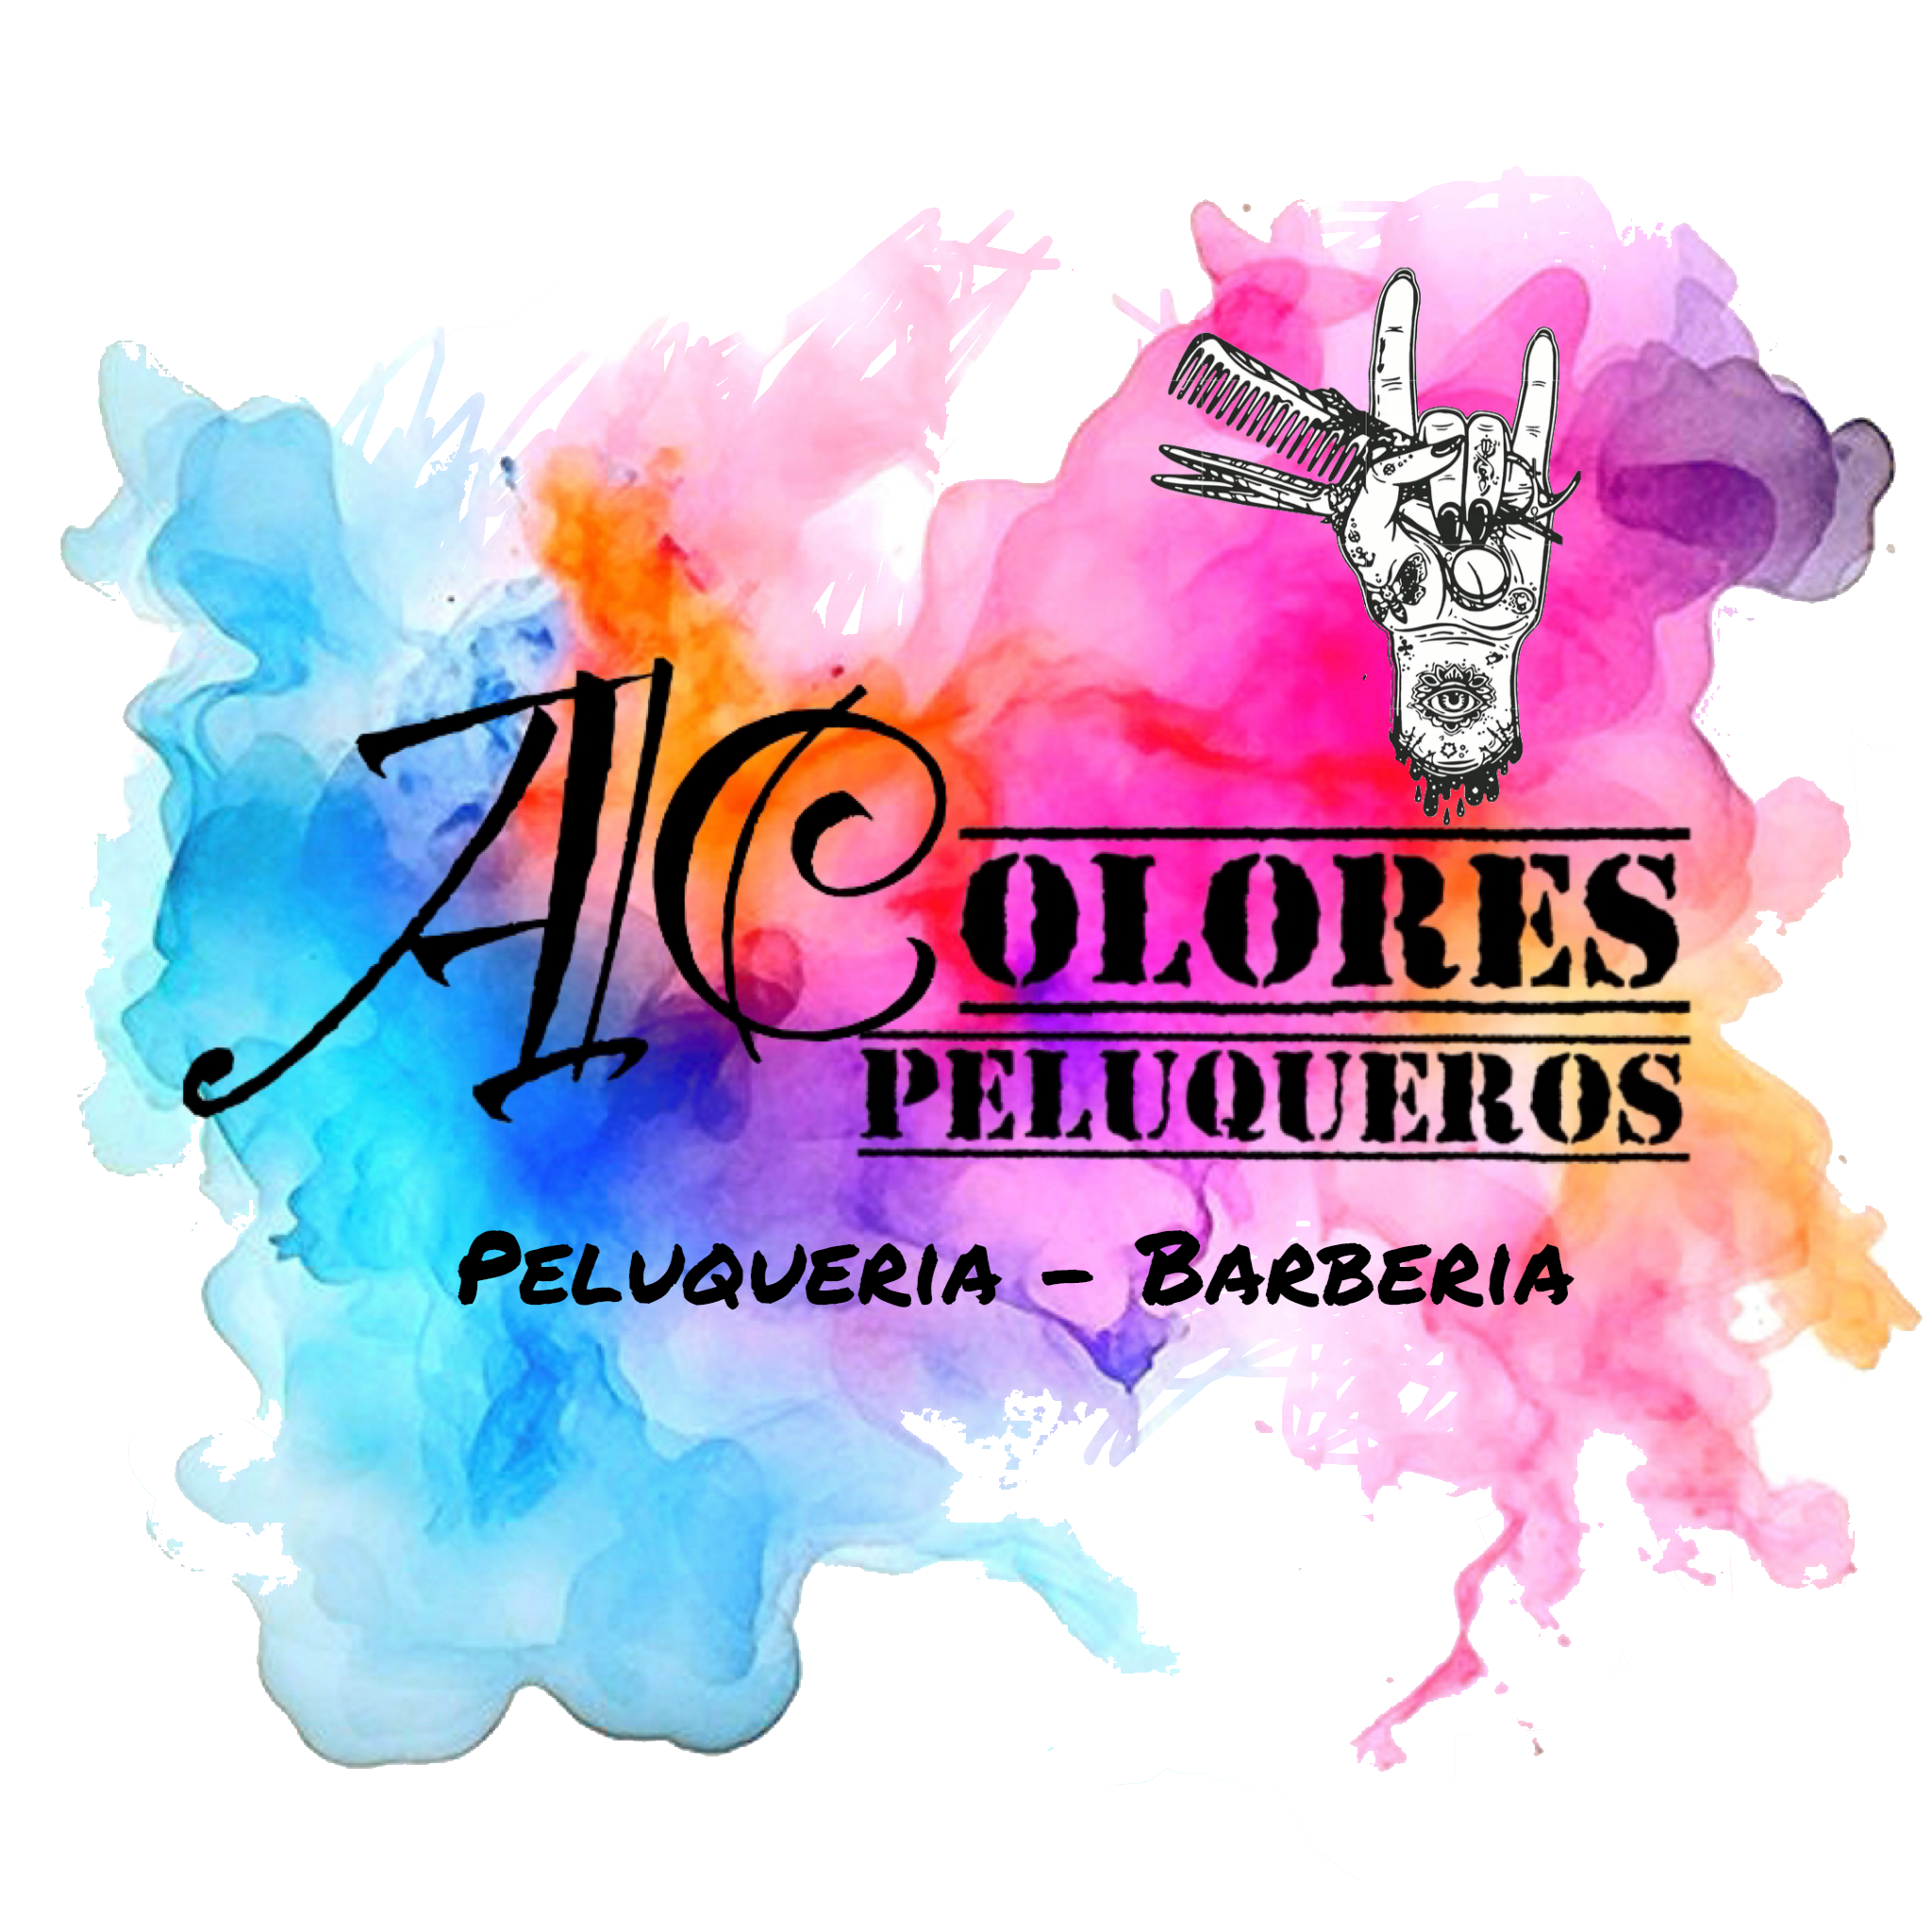 Acolores Peluqueros Valladolid